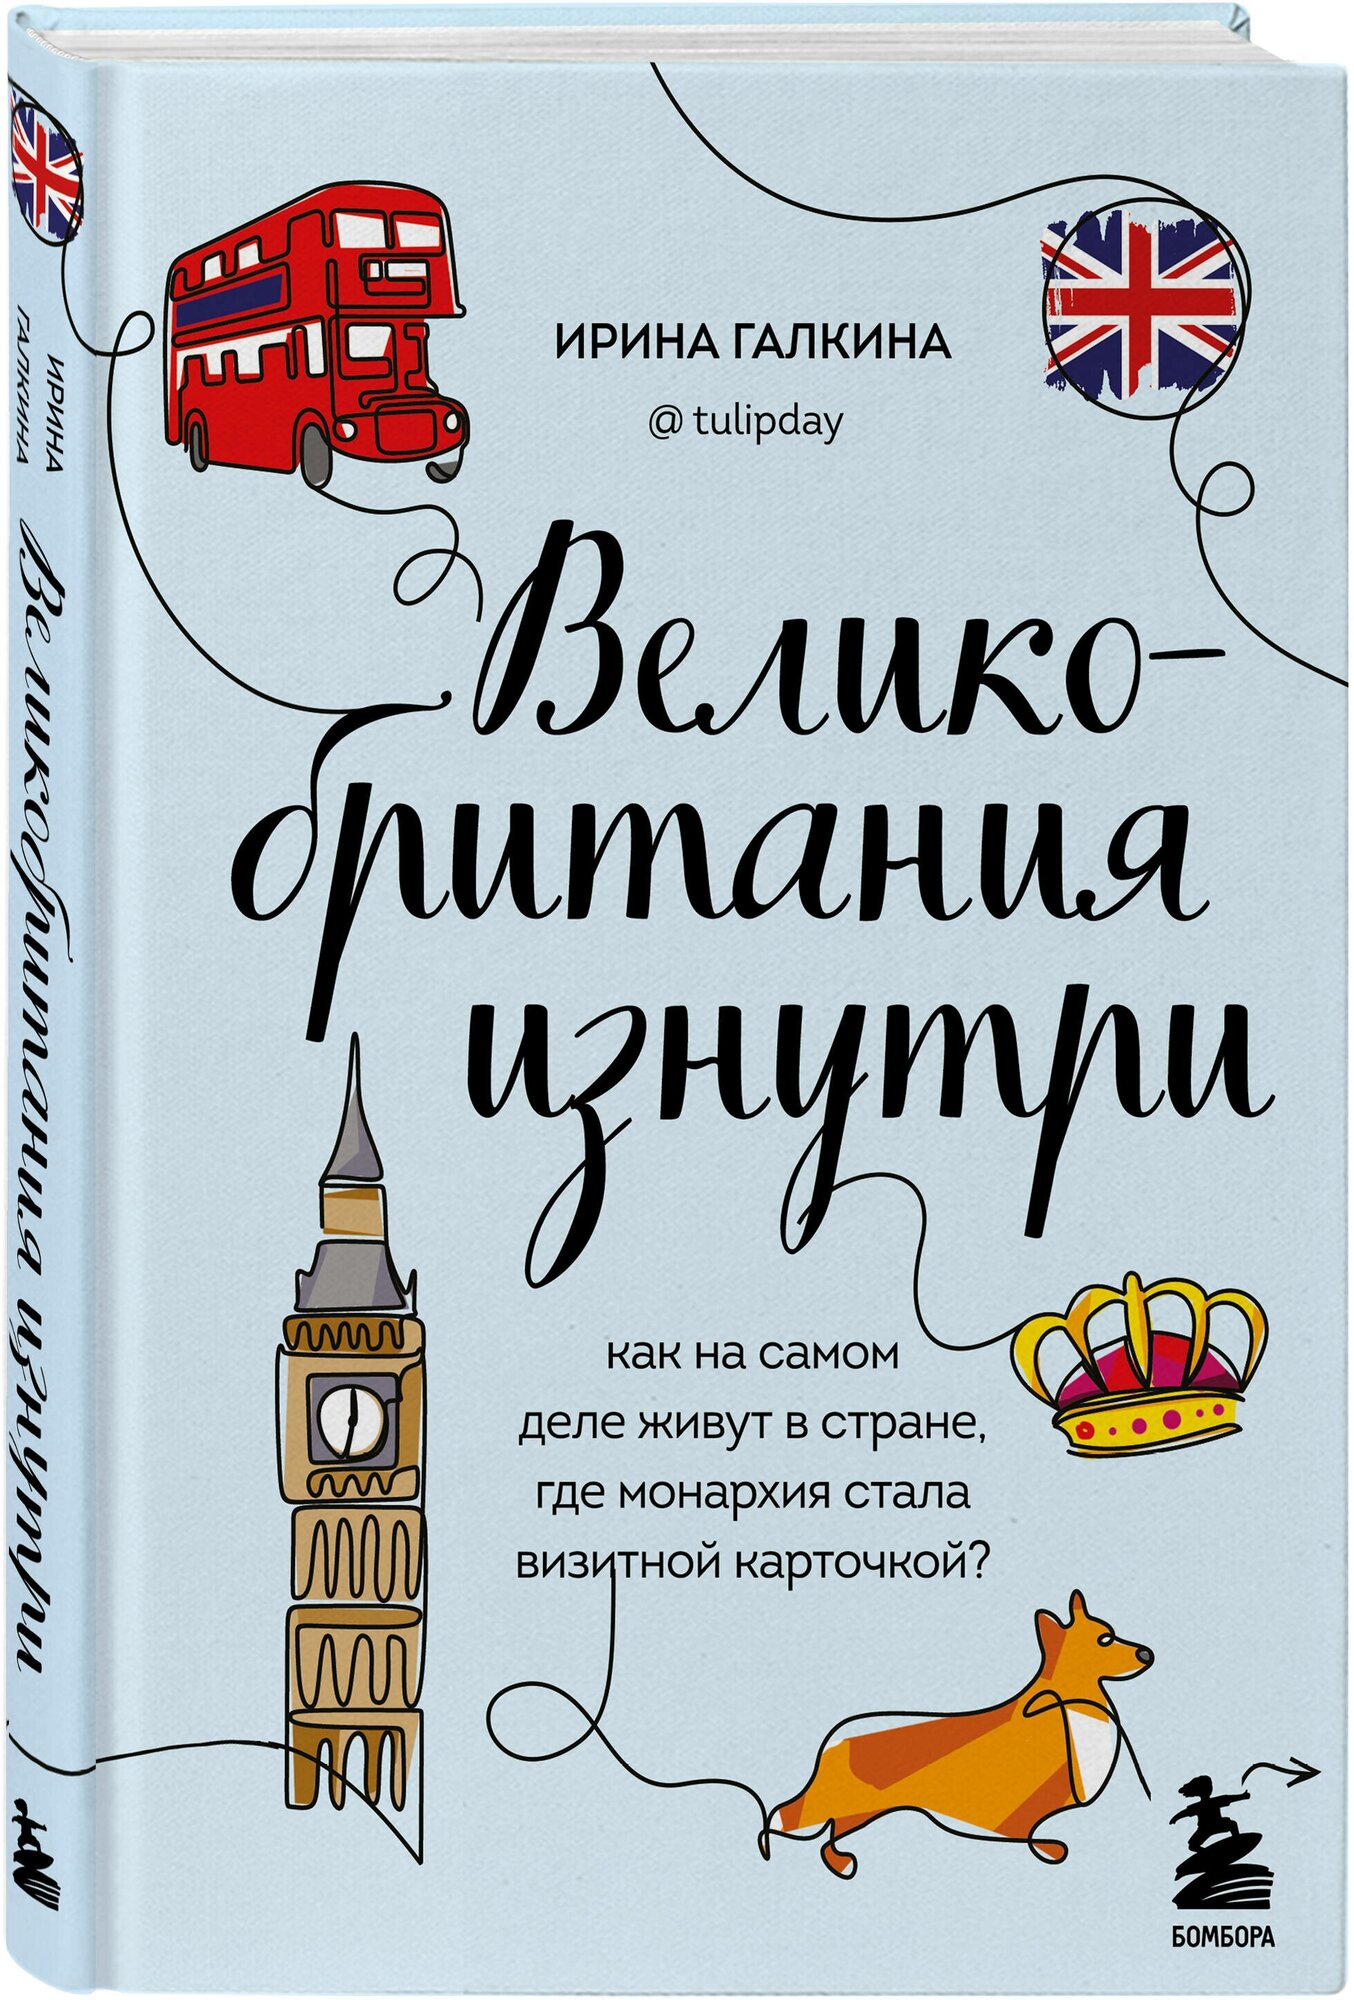 Галкина И. Ф. Великобритания изнутри. Как на самом деле живут в стране, где монархия стала визитной карточкой? (дополненное издание)